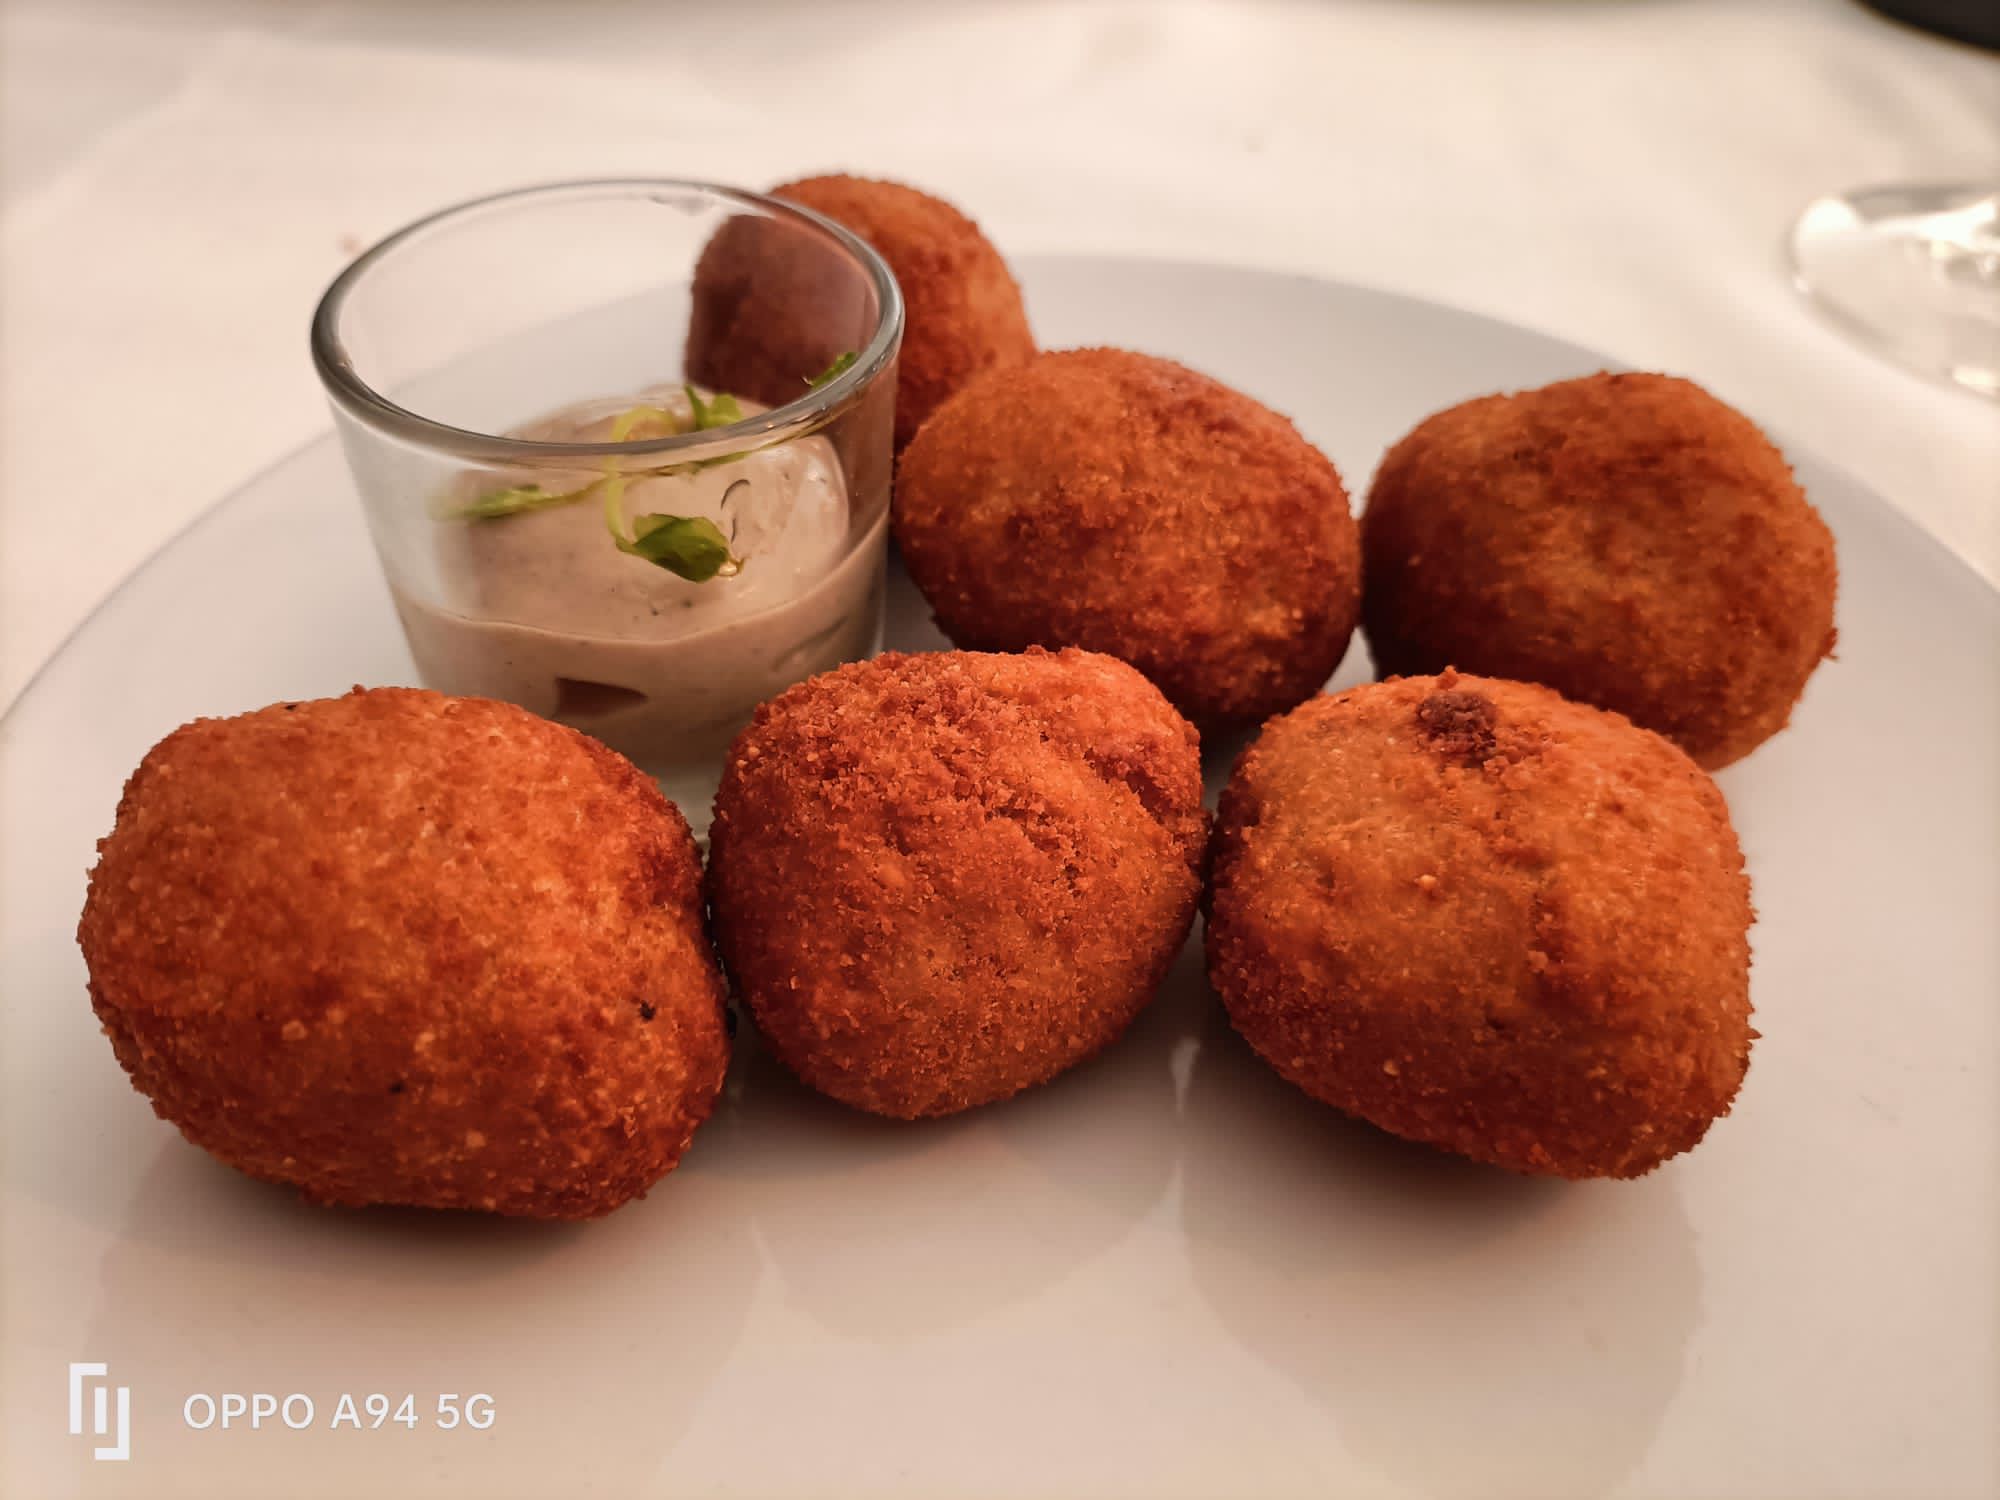 Reseñas gastronómicas: Restaurante Casa Méndez en Villafranca del Bierzo 10